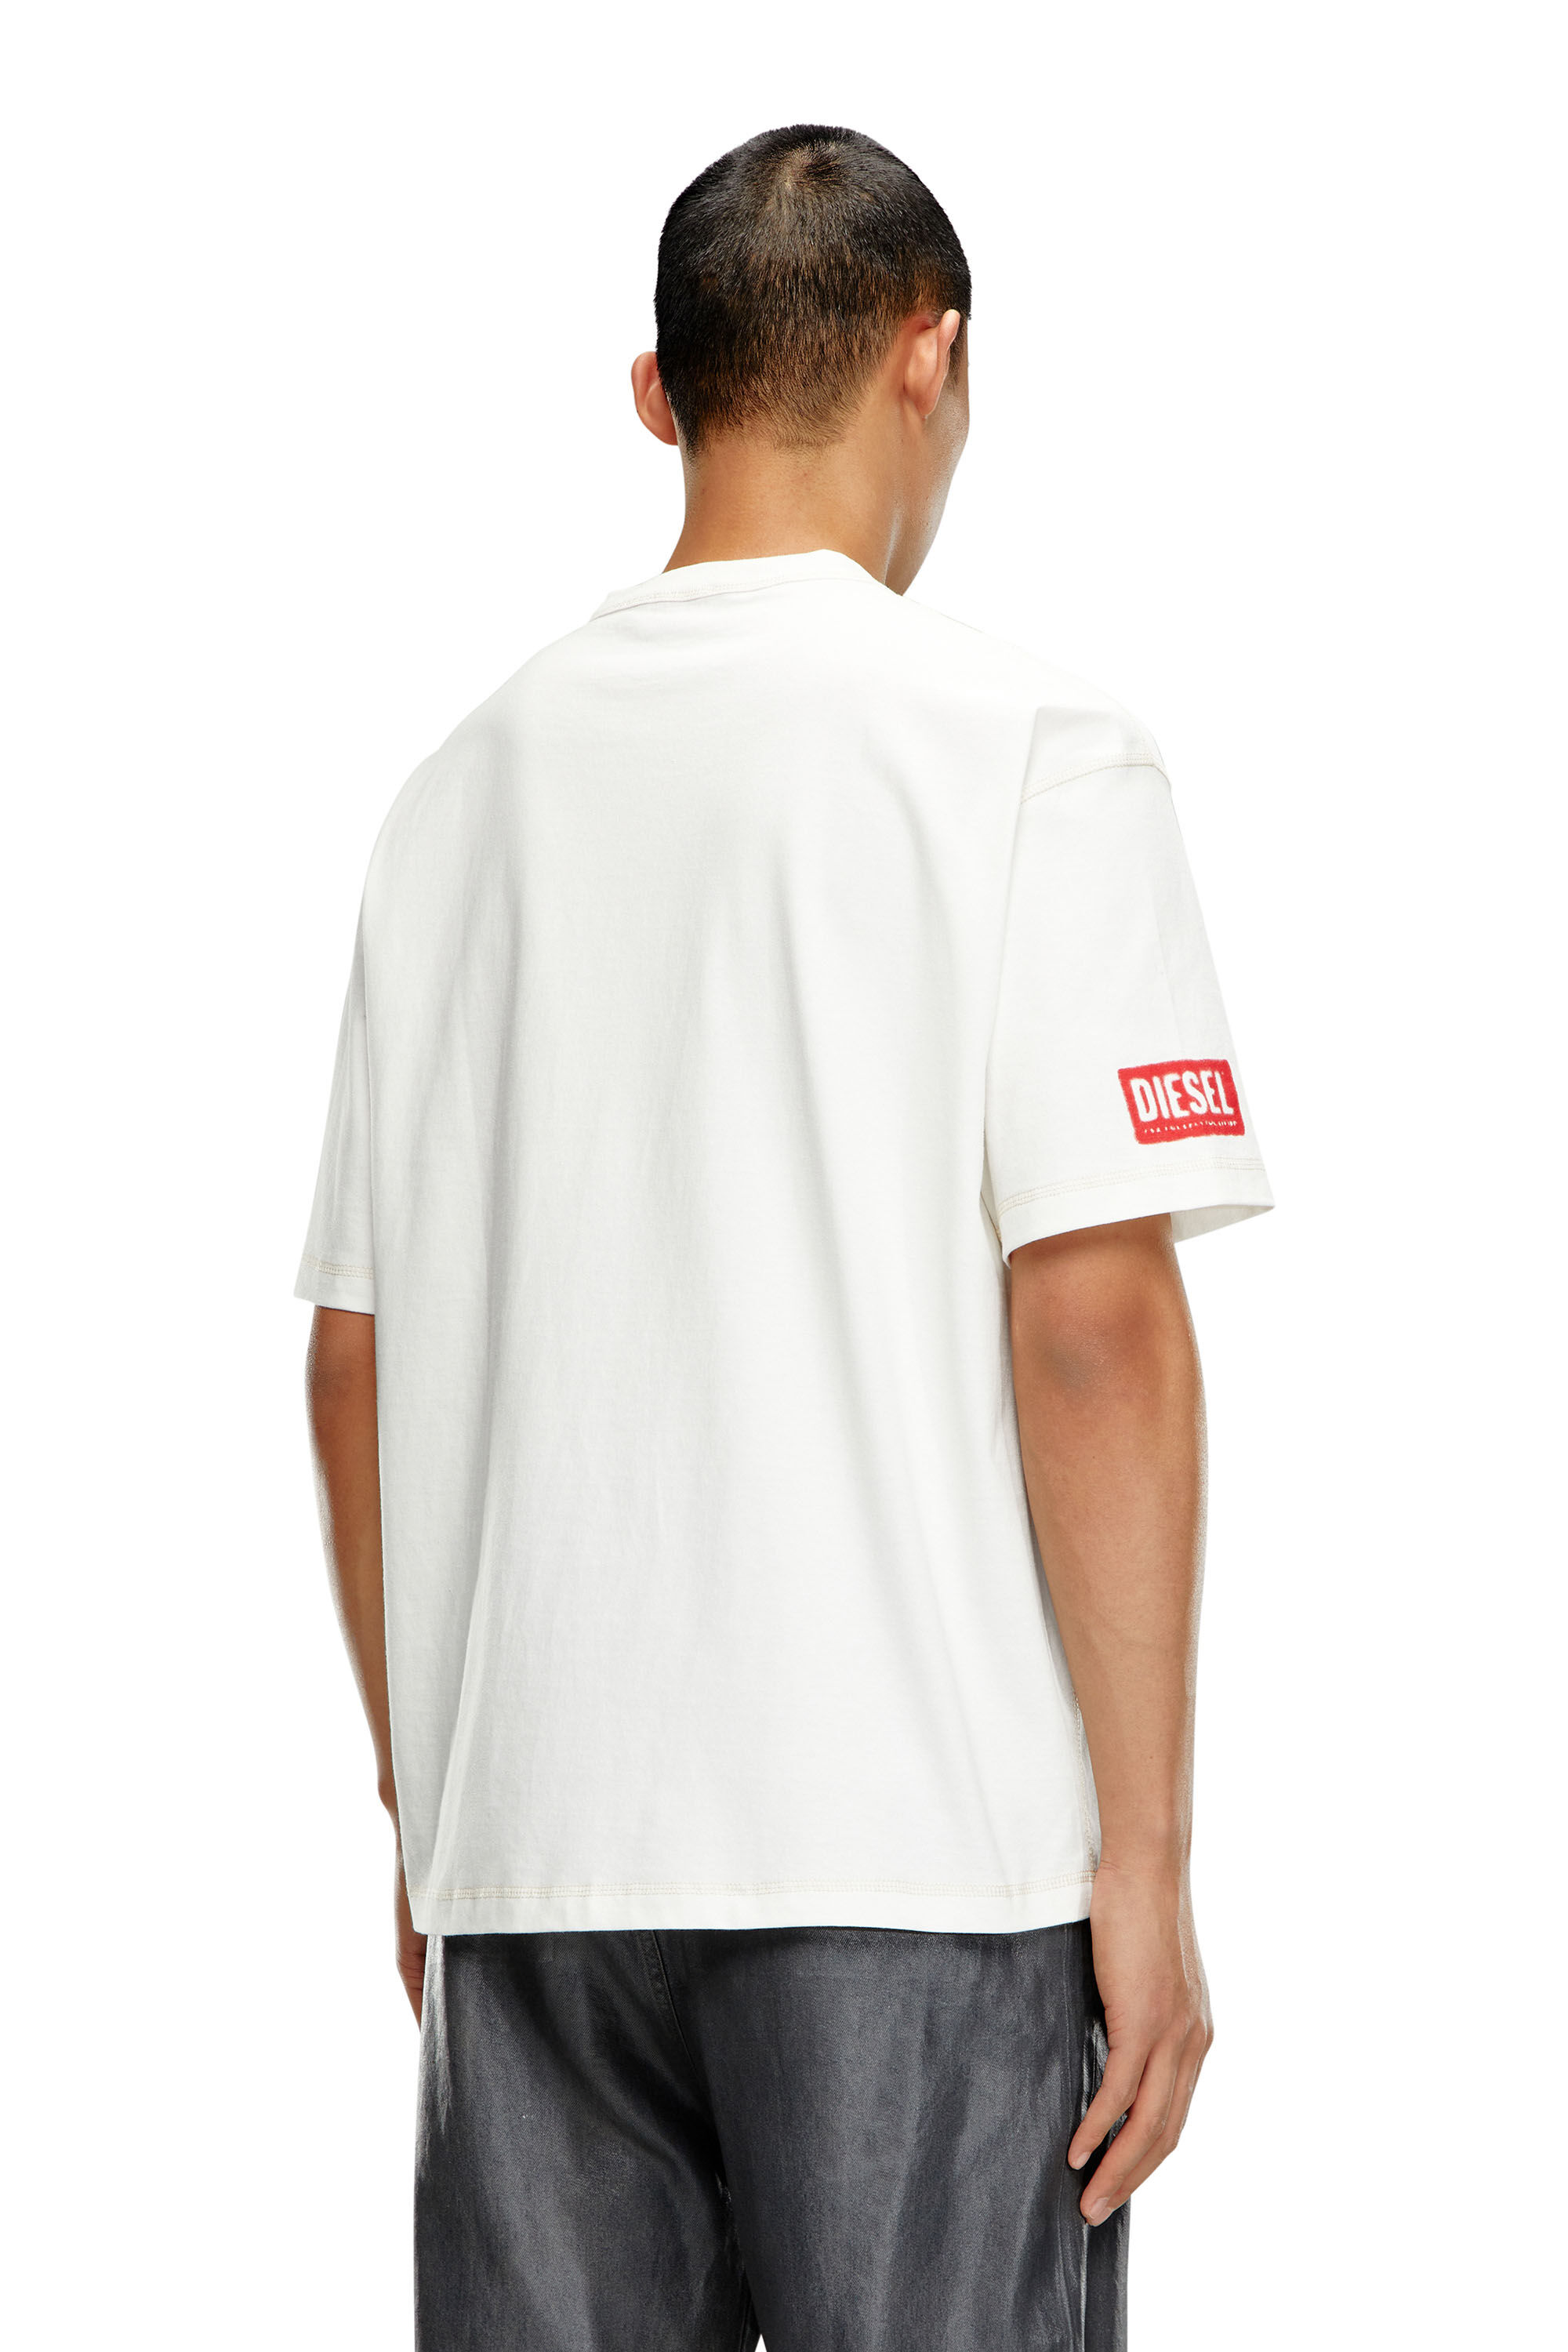 安い在庫あディーゼル　キッズ　Tシャツ 1122 サイズ4Y(4才)　個性的なデザイン Tシャツ/カットソー